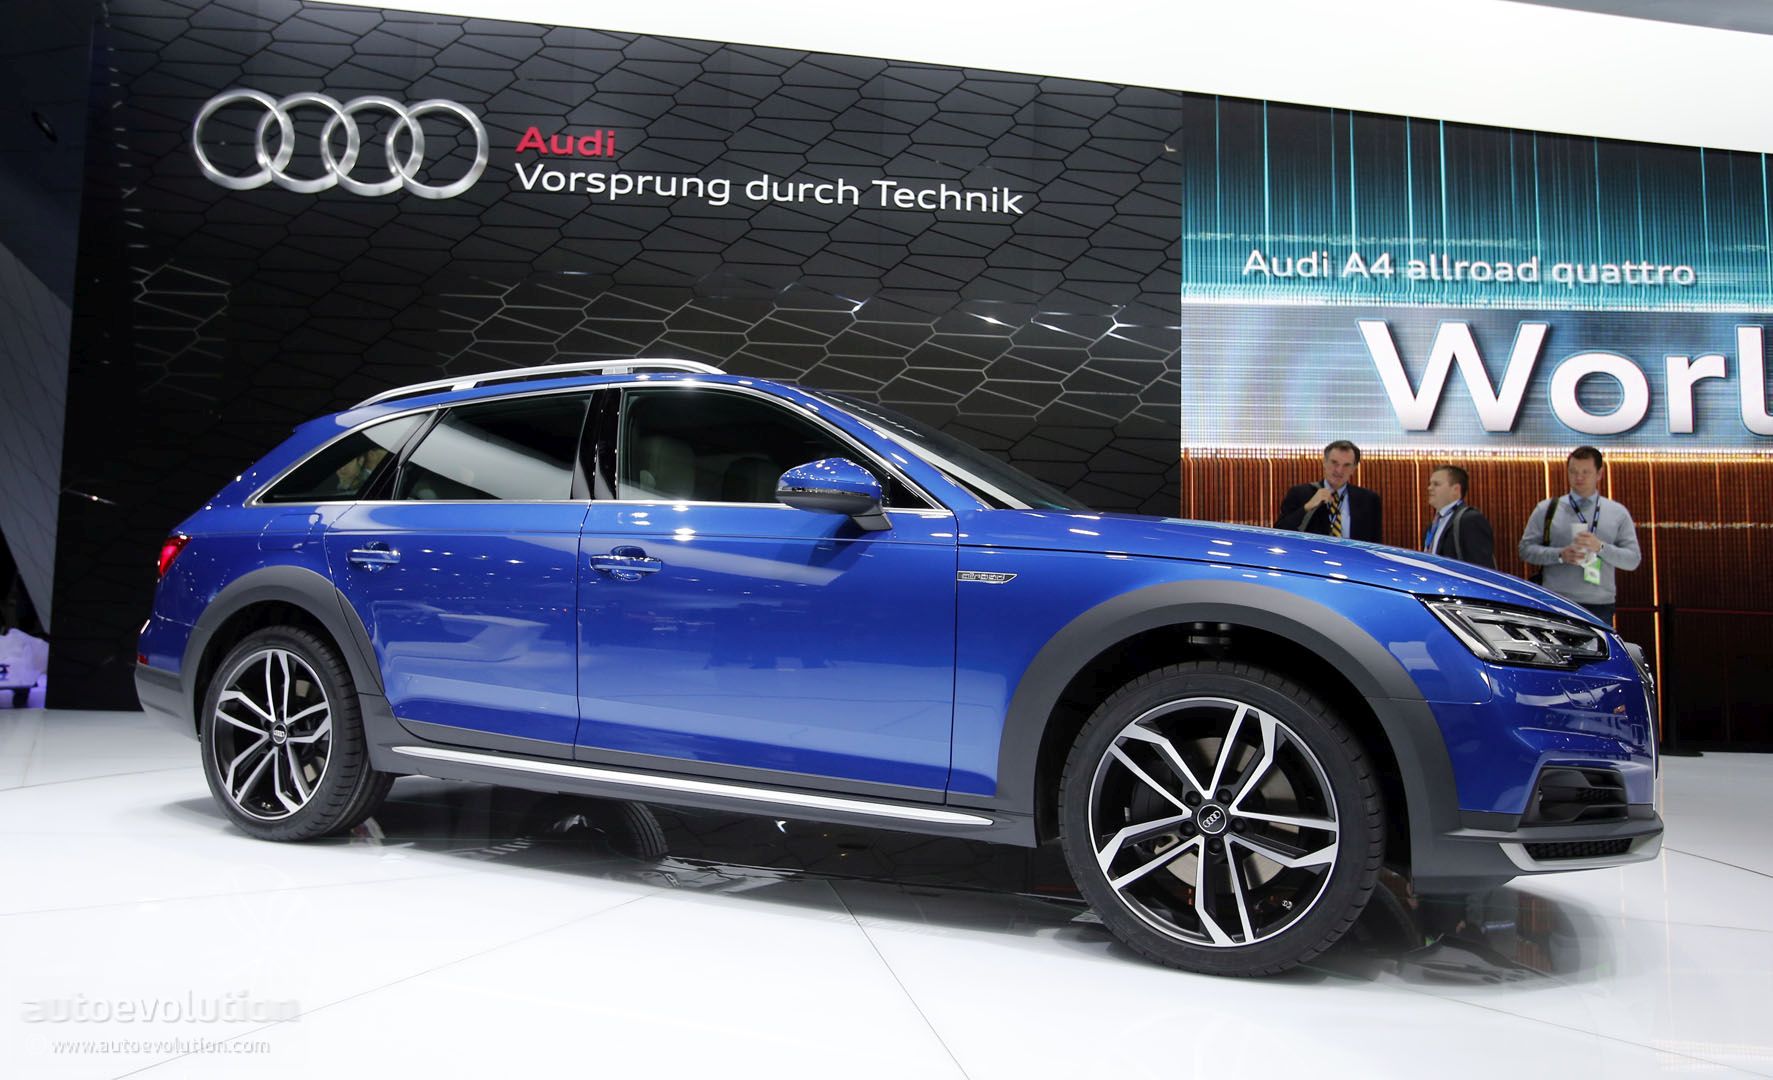 2017 Audi A4 Allroad Quattro Offers a Refined SUV ...